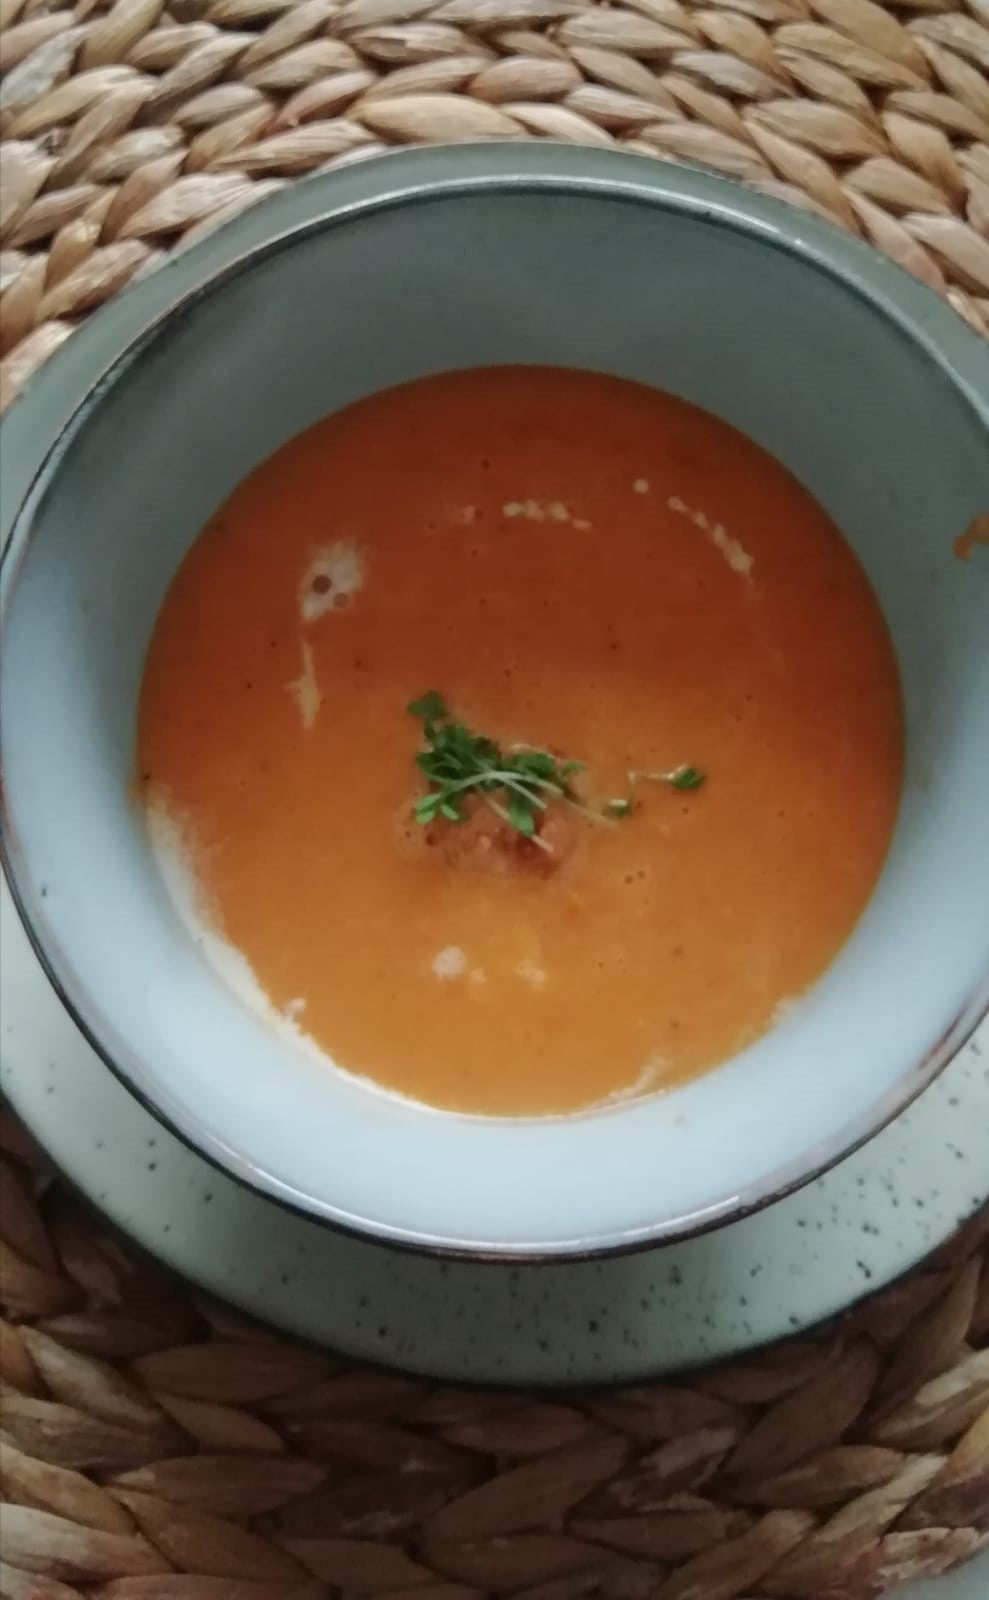 Een blauw grijze soepkom op een bijpassend bord. Hierin zit oranje tomatensoep met een room cirkel er om heen. In het midden een plukje groen.